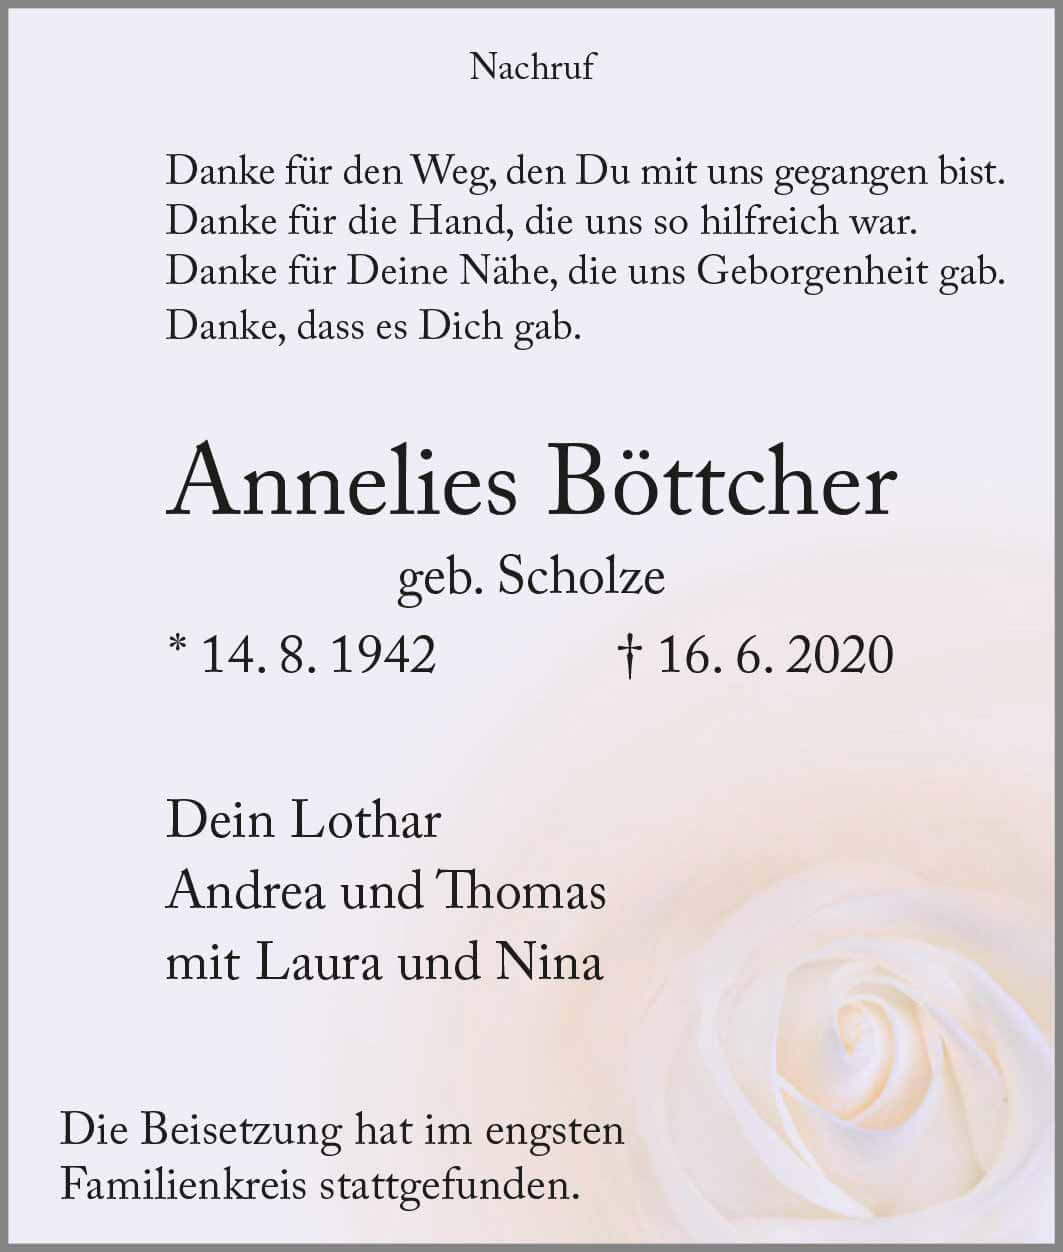 Annelies Böttcher † 16. 6. 2020